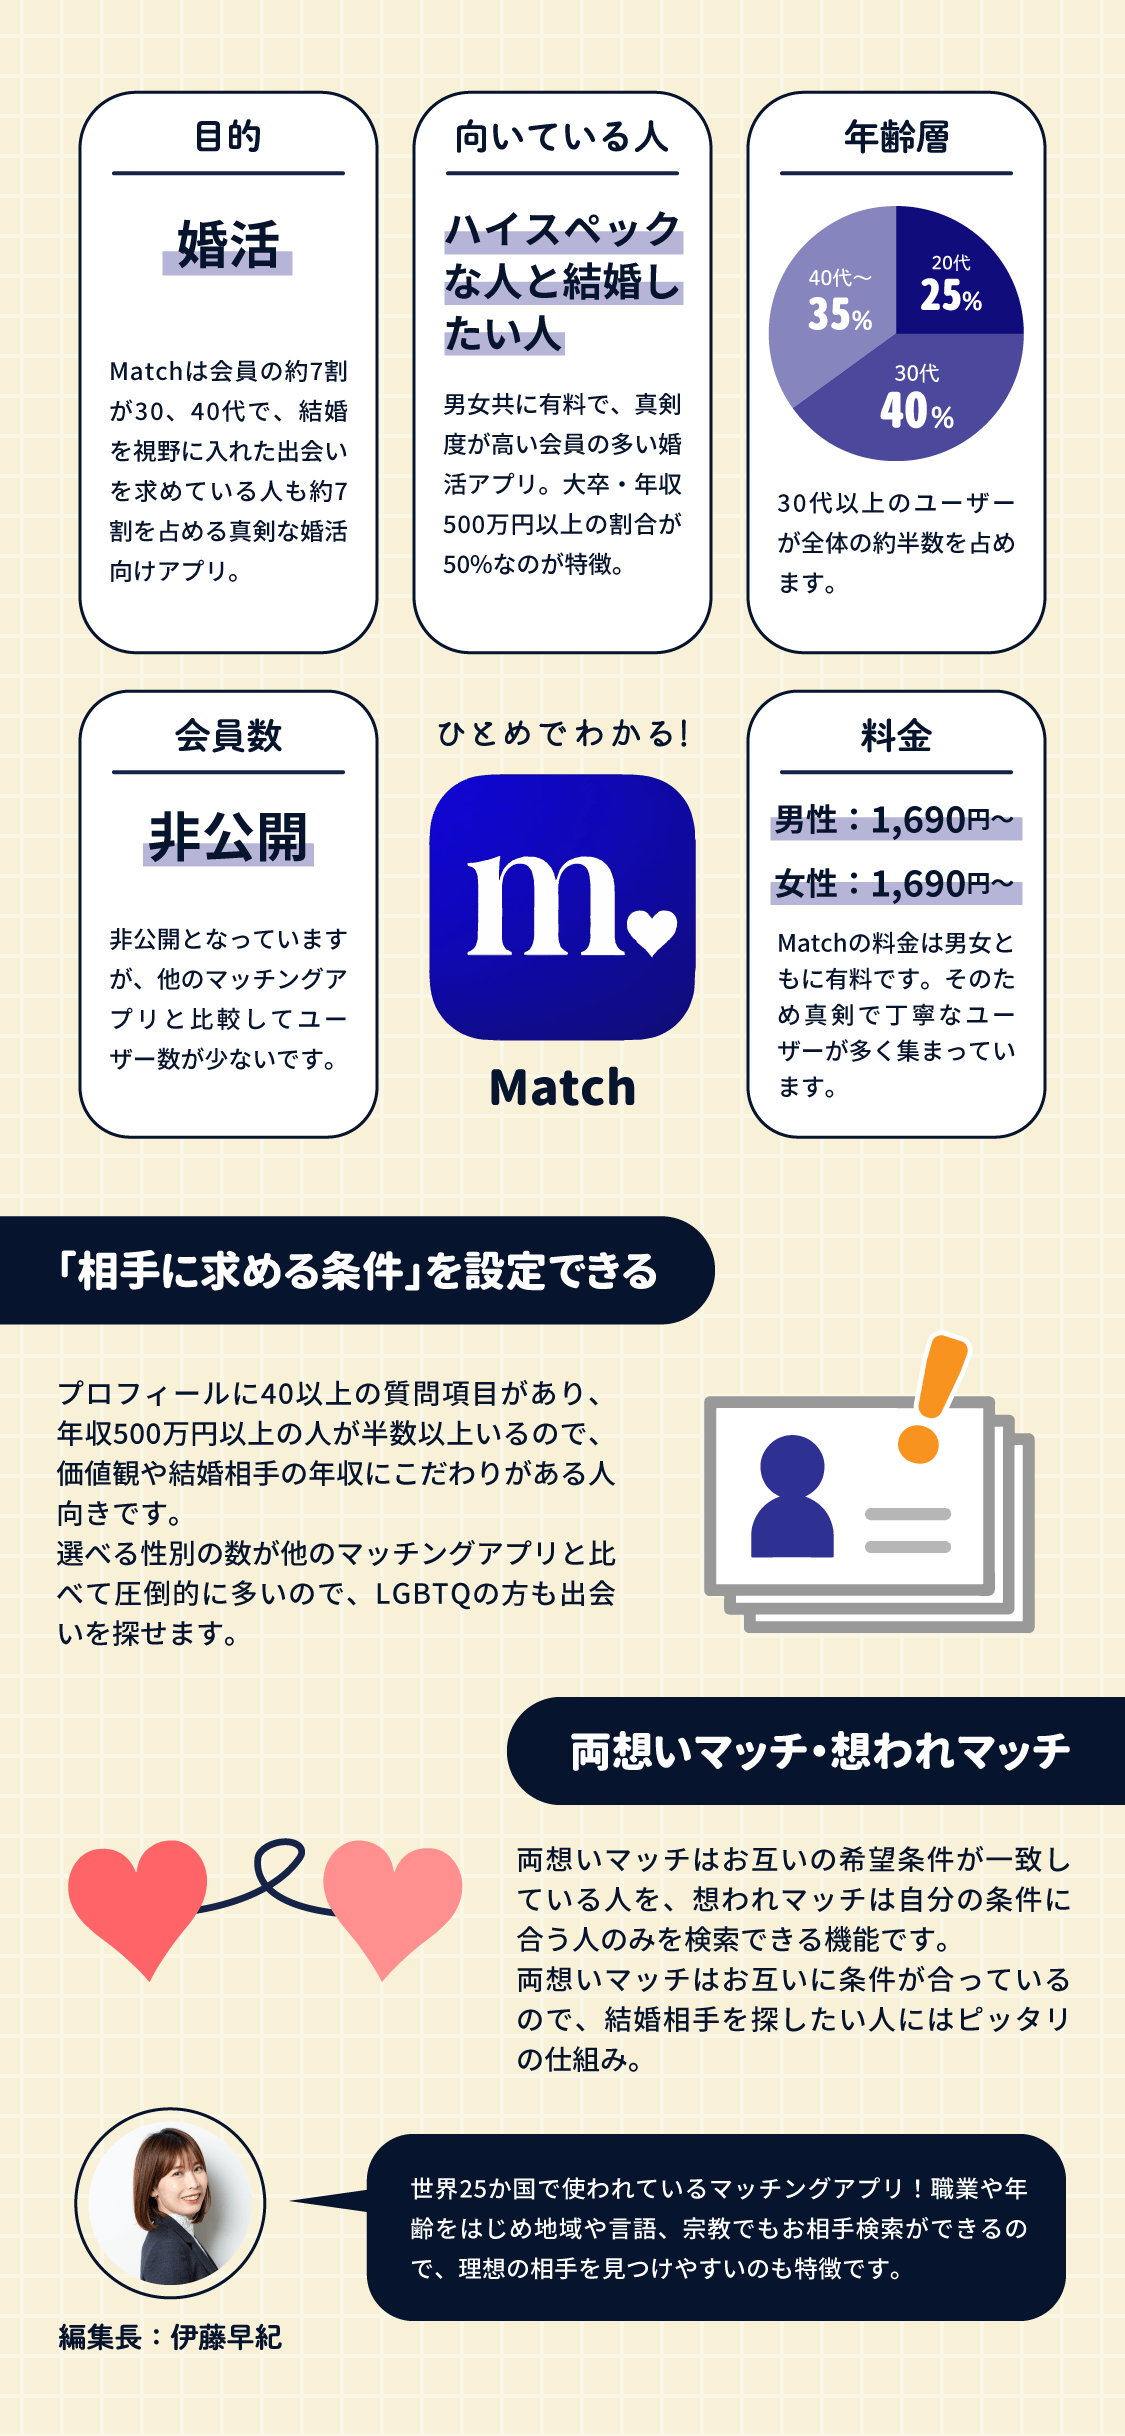 Matchはハイスペックな人と会いたい婚活している方におすすめのマッチングアプリで、相手に求める条件を40以上の項目で絞り込みができ、両想い・想われマッチの機能が特徴